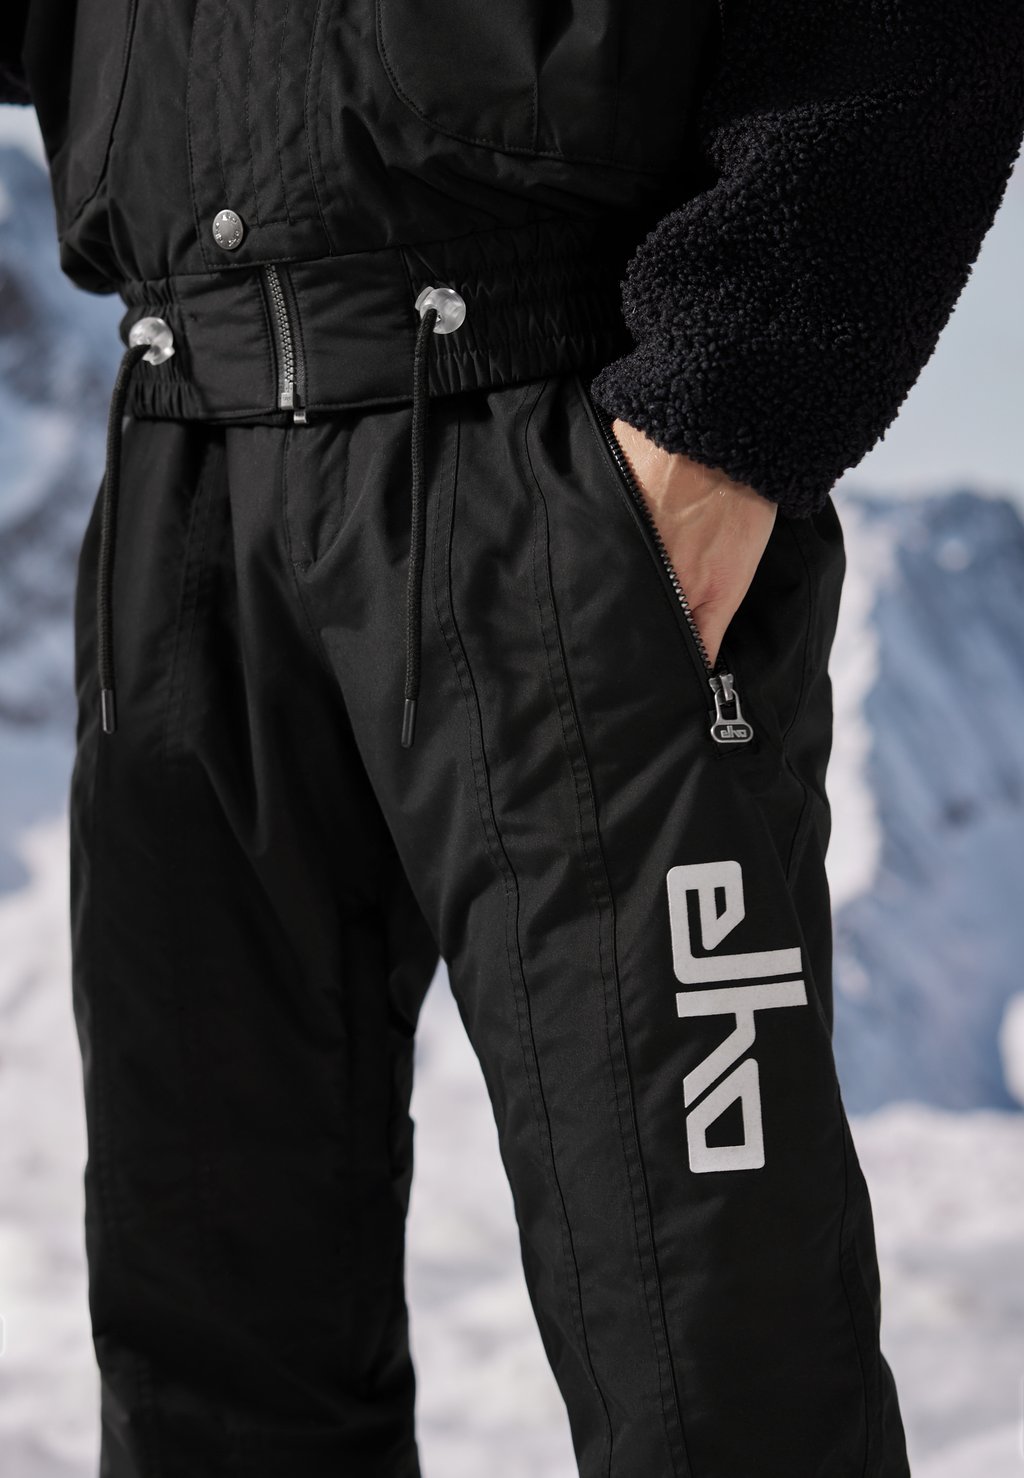 Лыжные брюки ZERMATT 89 ELHO, цвет black